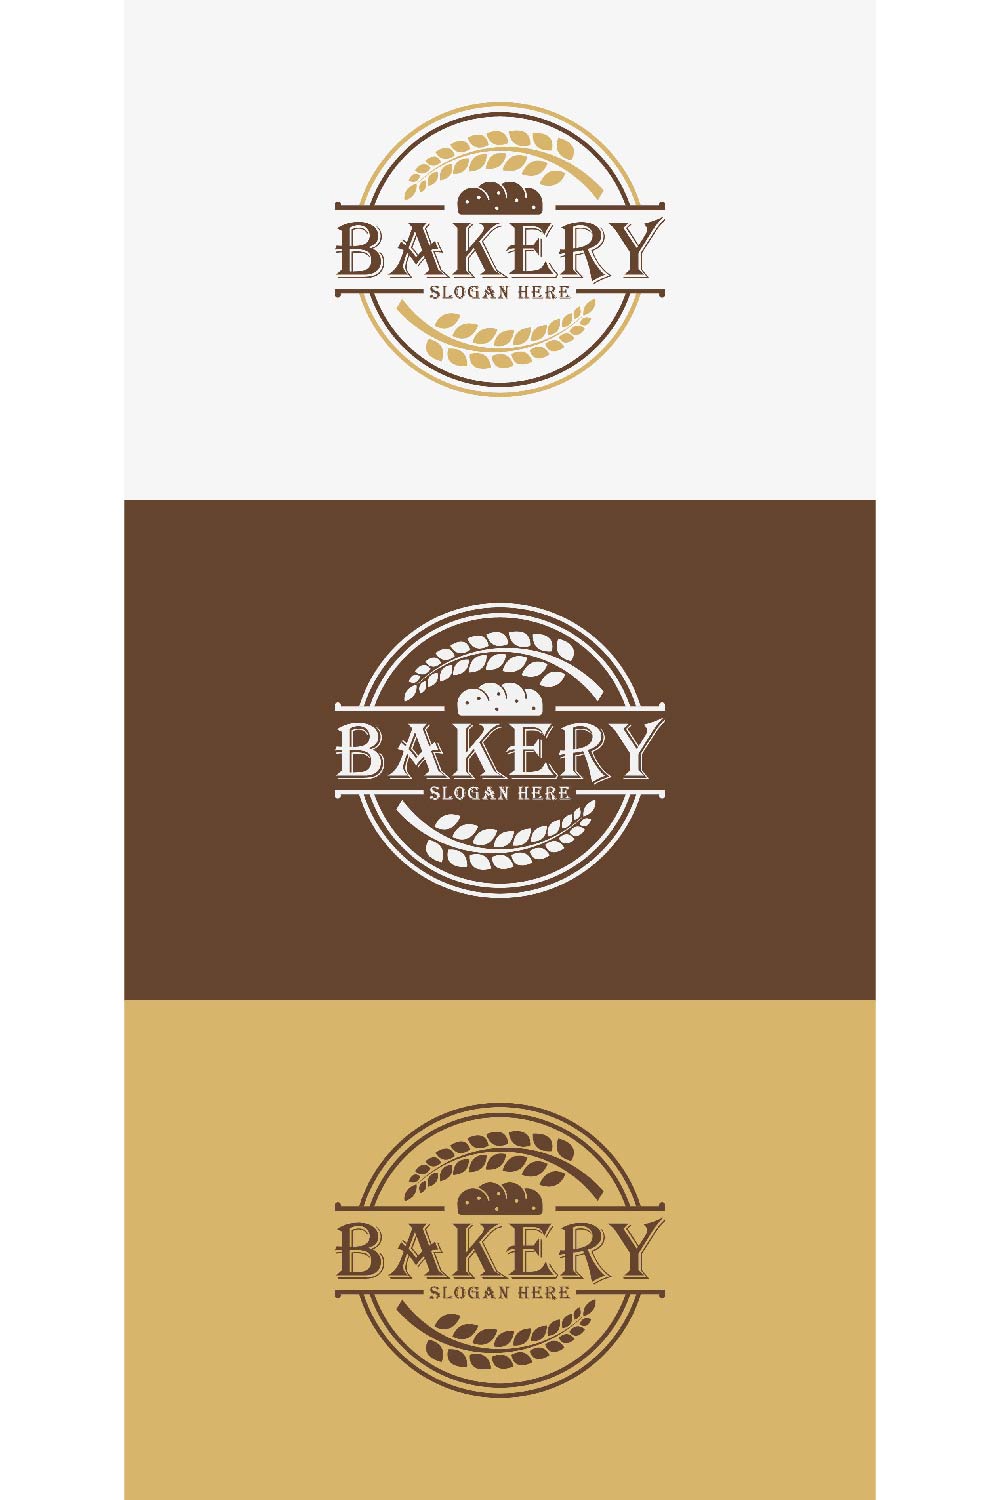 Bakery Logo Design pinterest preview image.